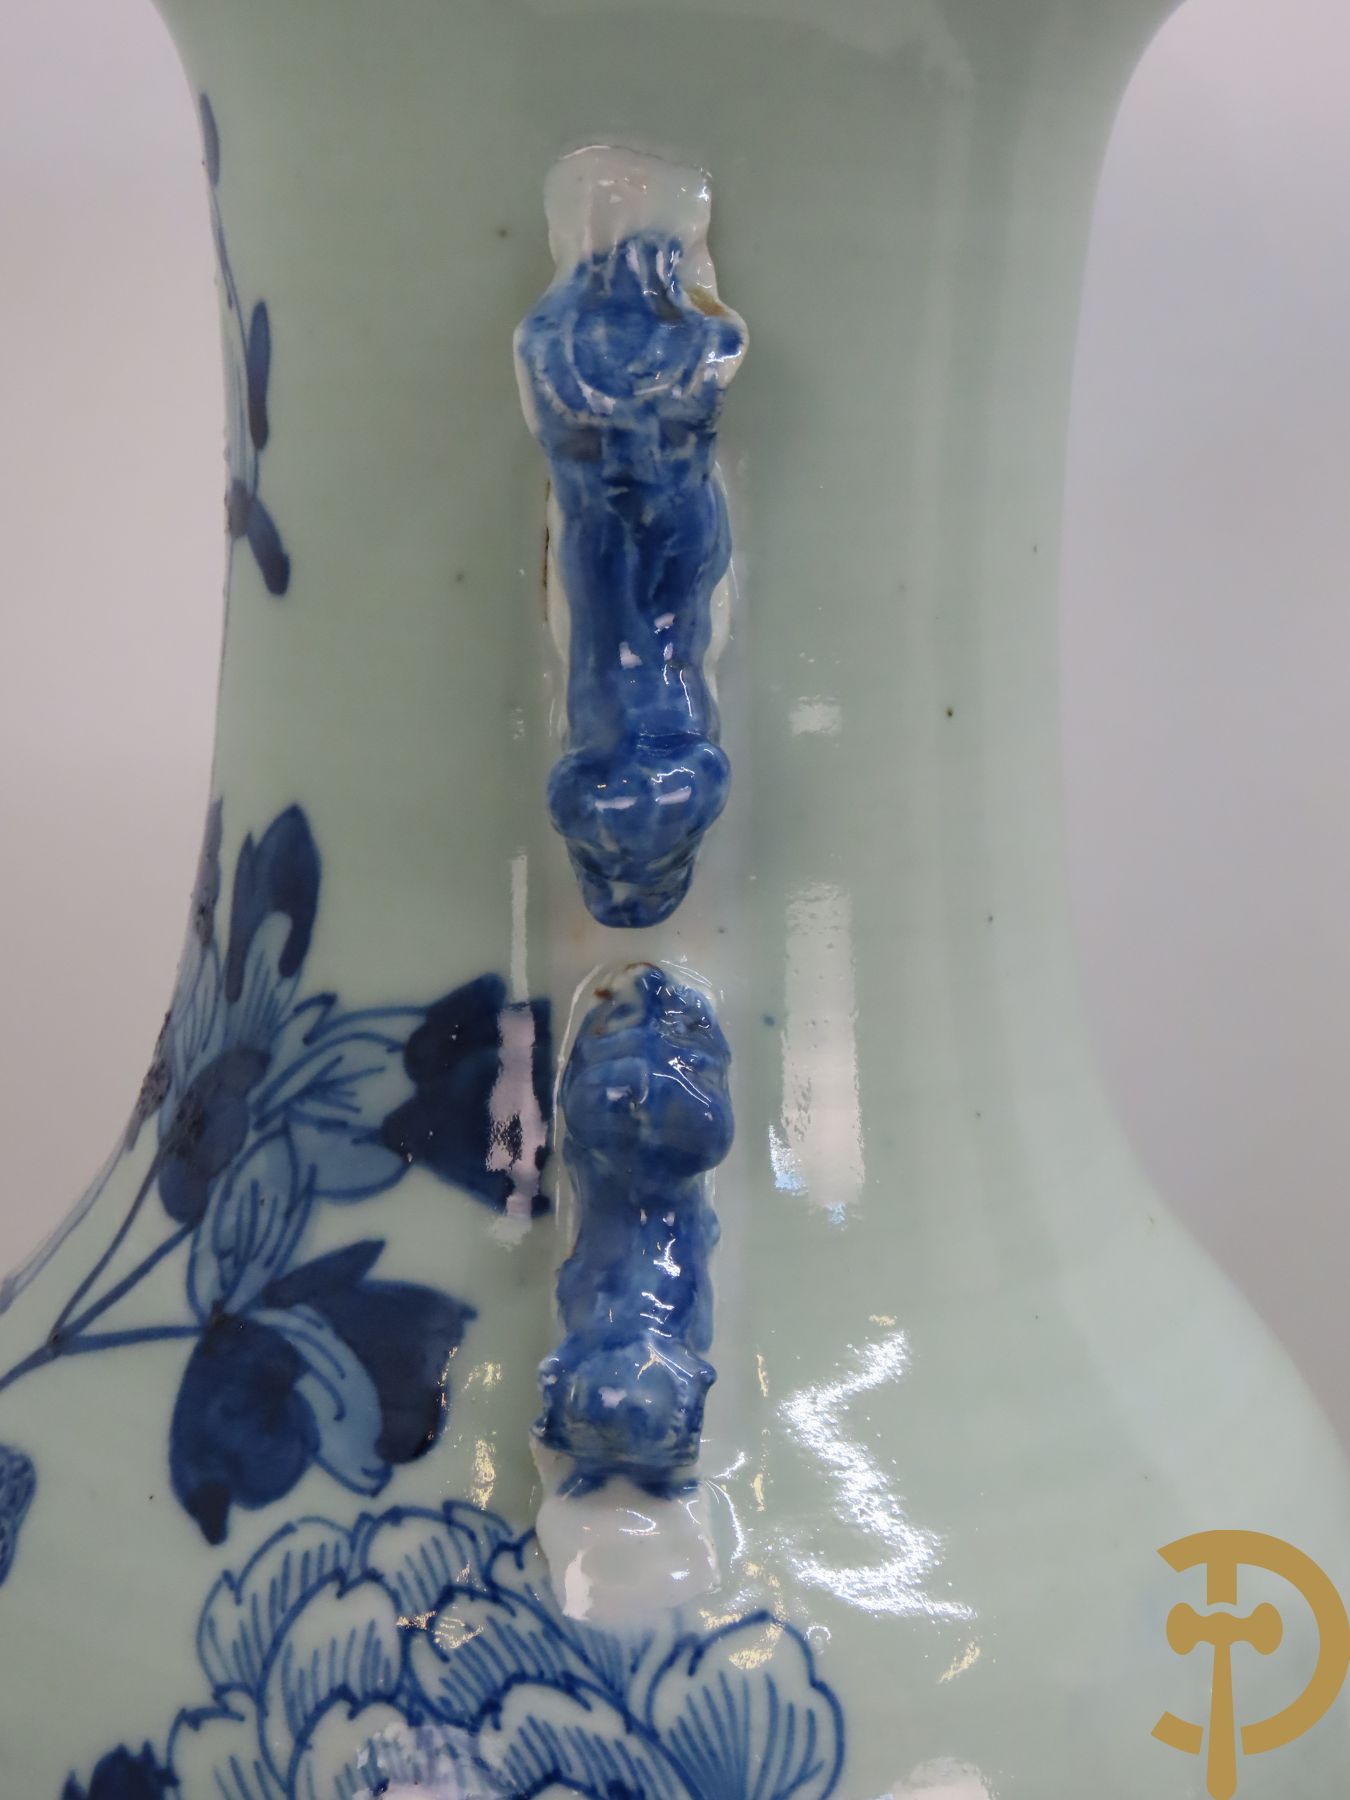 Paar Chinese blauw/wit porseleinen celadon vazen met fenix- en bloemendecor